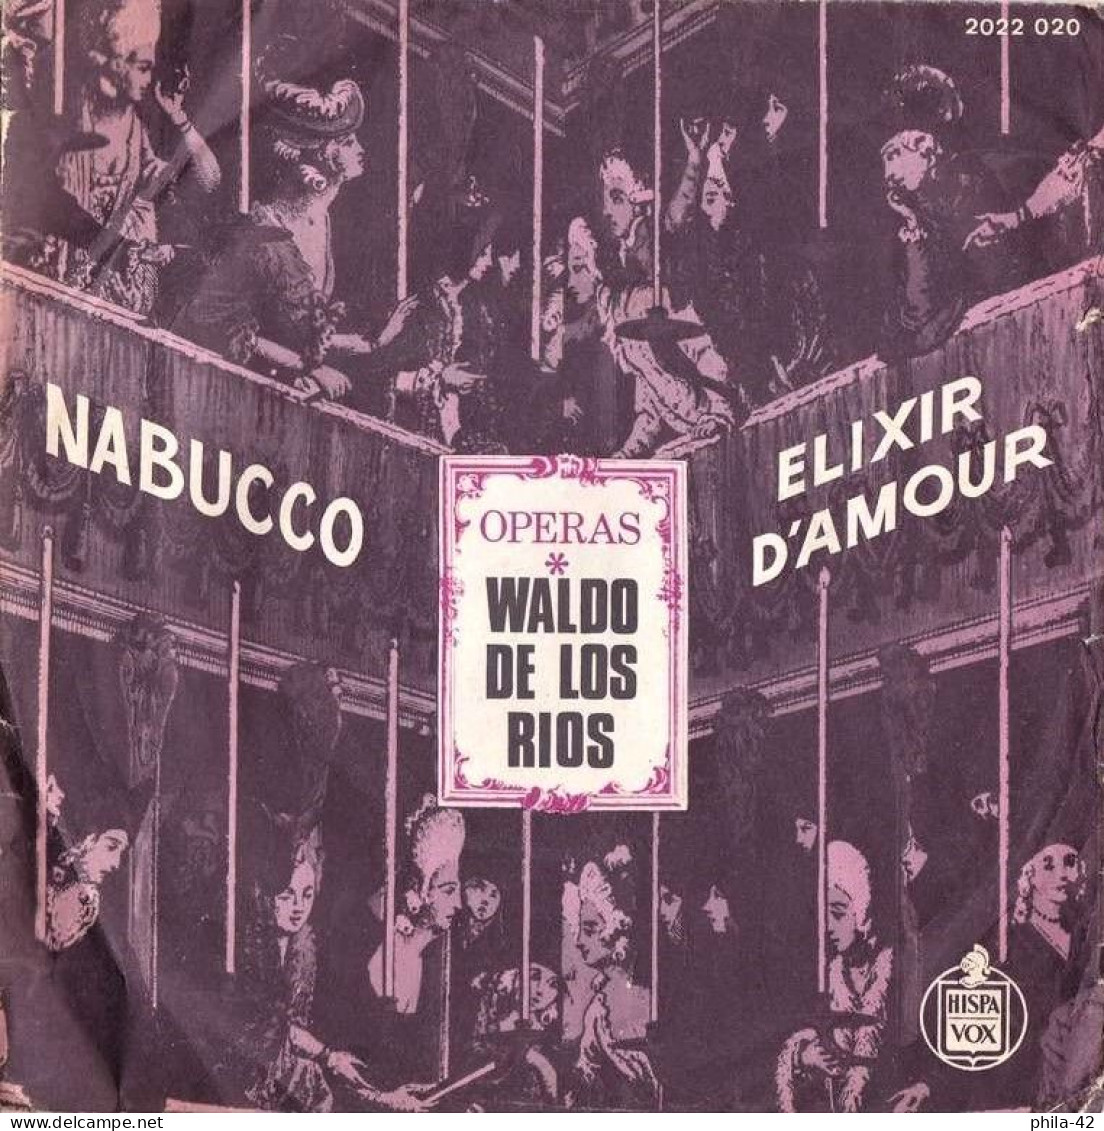 Waldo De Las Rios " Nabucco " Et " Elixir D'Amour "  Vinyle 45 Tours 1973 - HISPA VOX N° 2022 020 - Opera